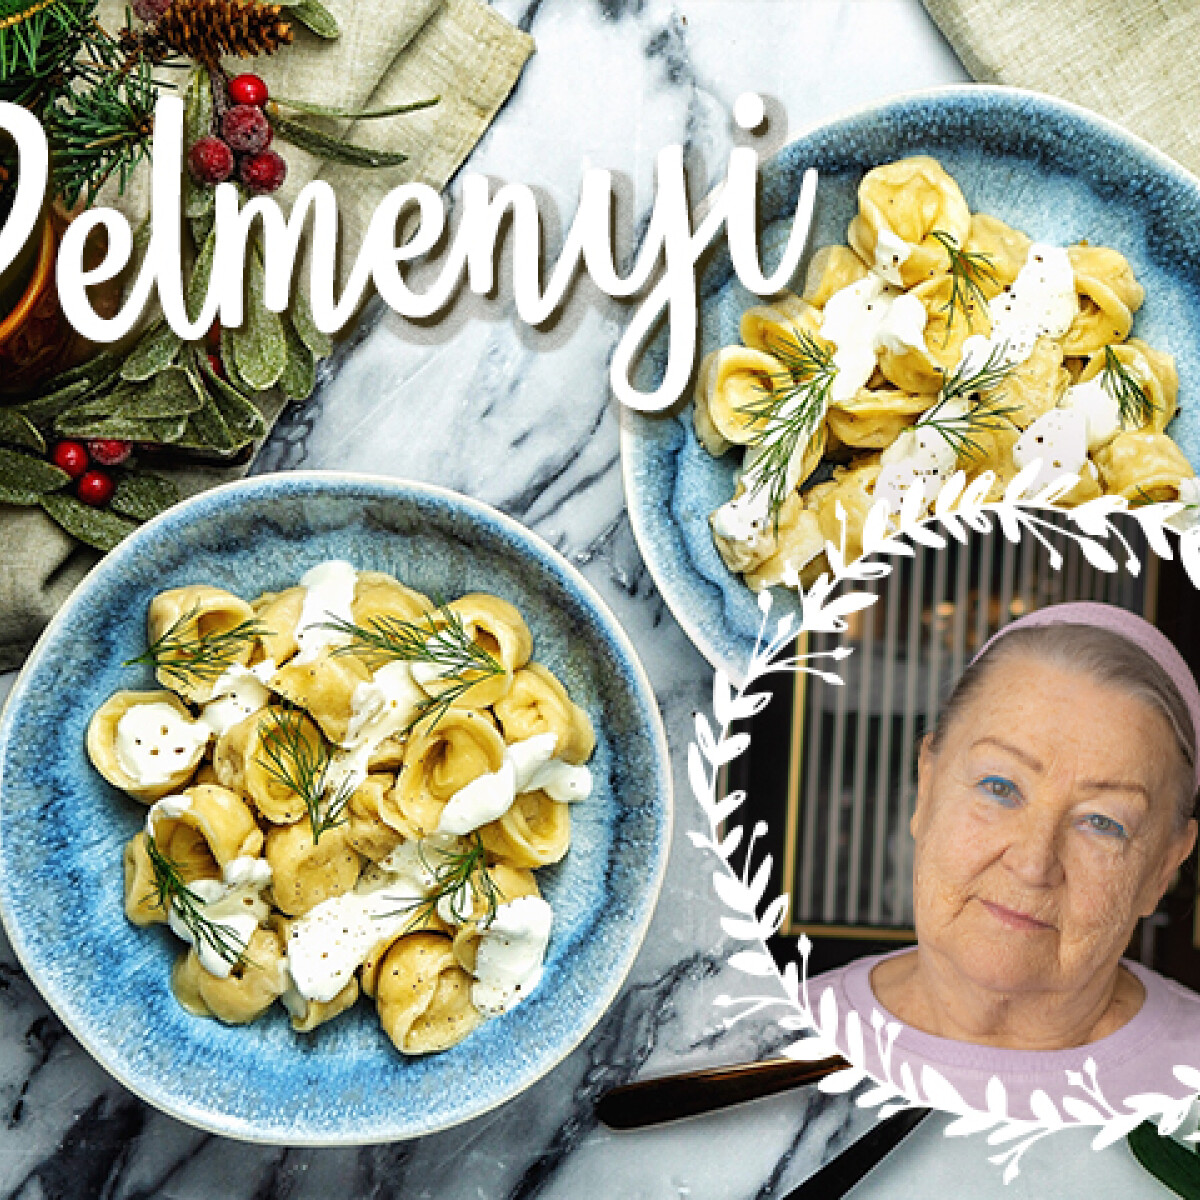 Nagyiprojekt Karanténkiadás 2. rész: Olga nénivel igazi orosz pelmenyit főztünk! - VIDEÓ